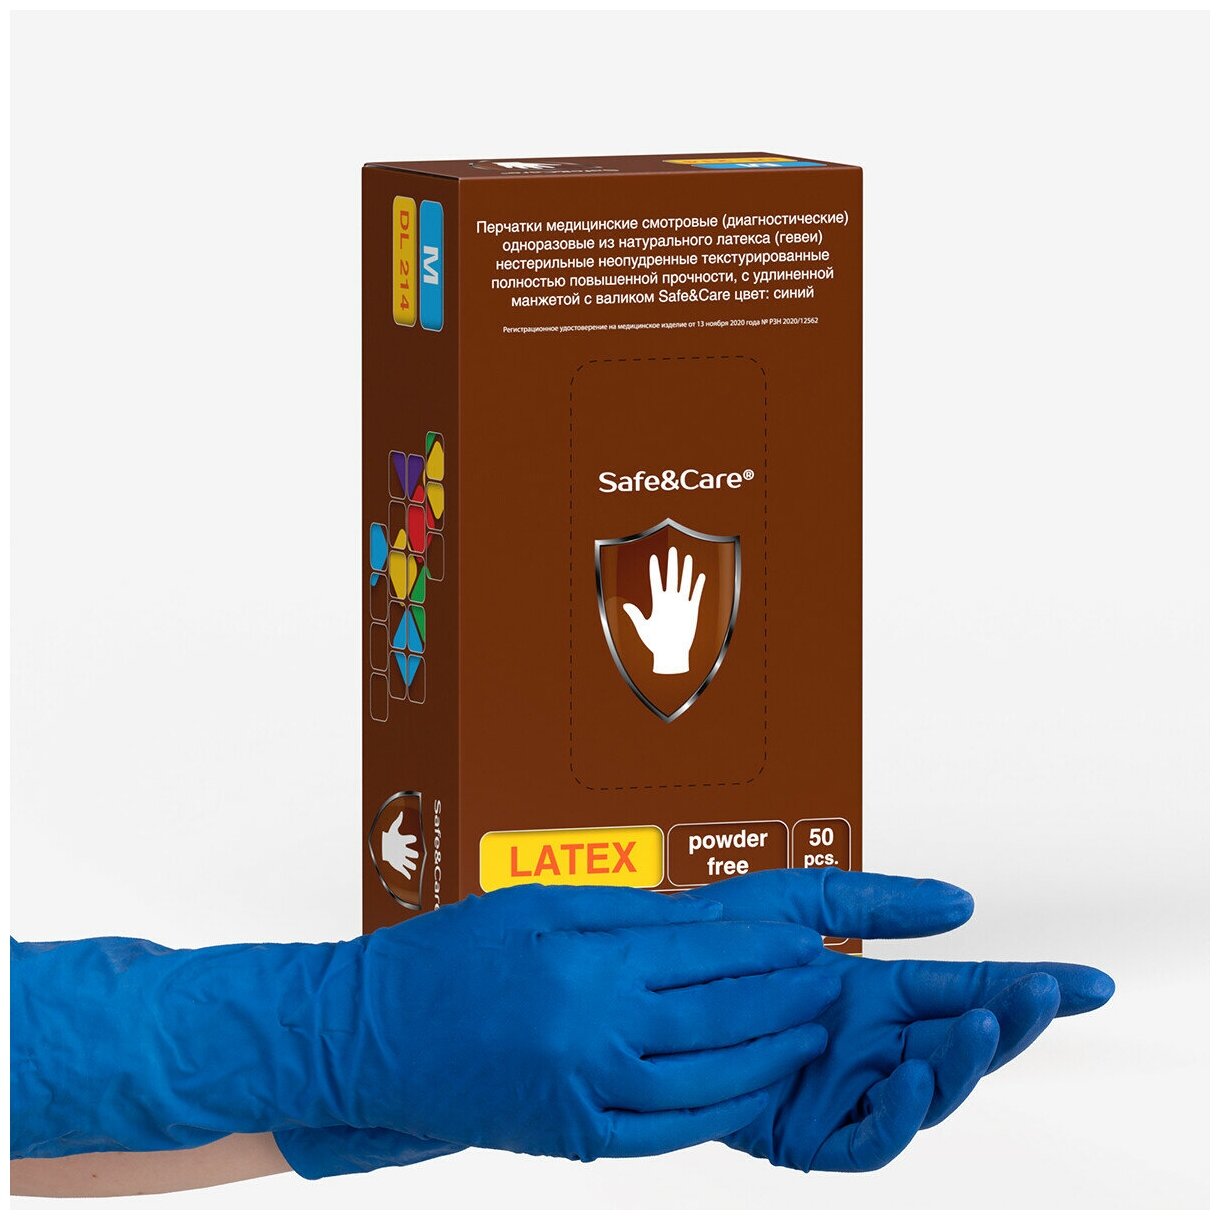 Перчатки латексные сверхпрочные High Risk Safe&Care DL 214, цвет: синий, размер M, 50 шт. (25 пар) двукратного хлорирования